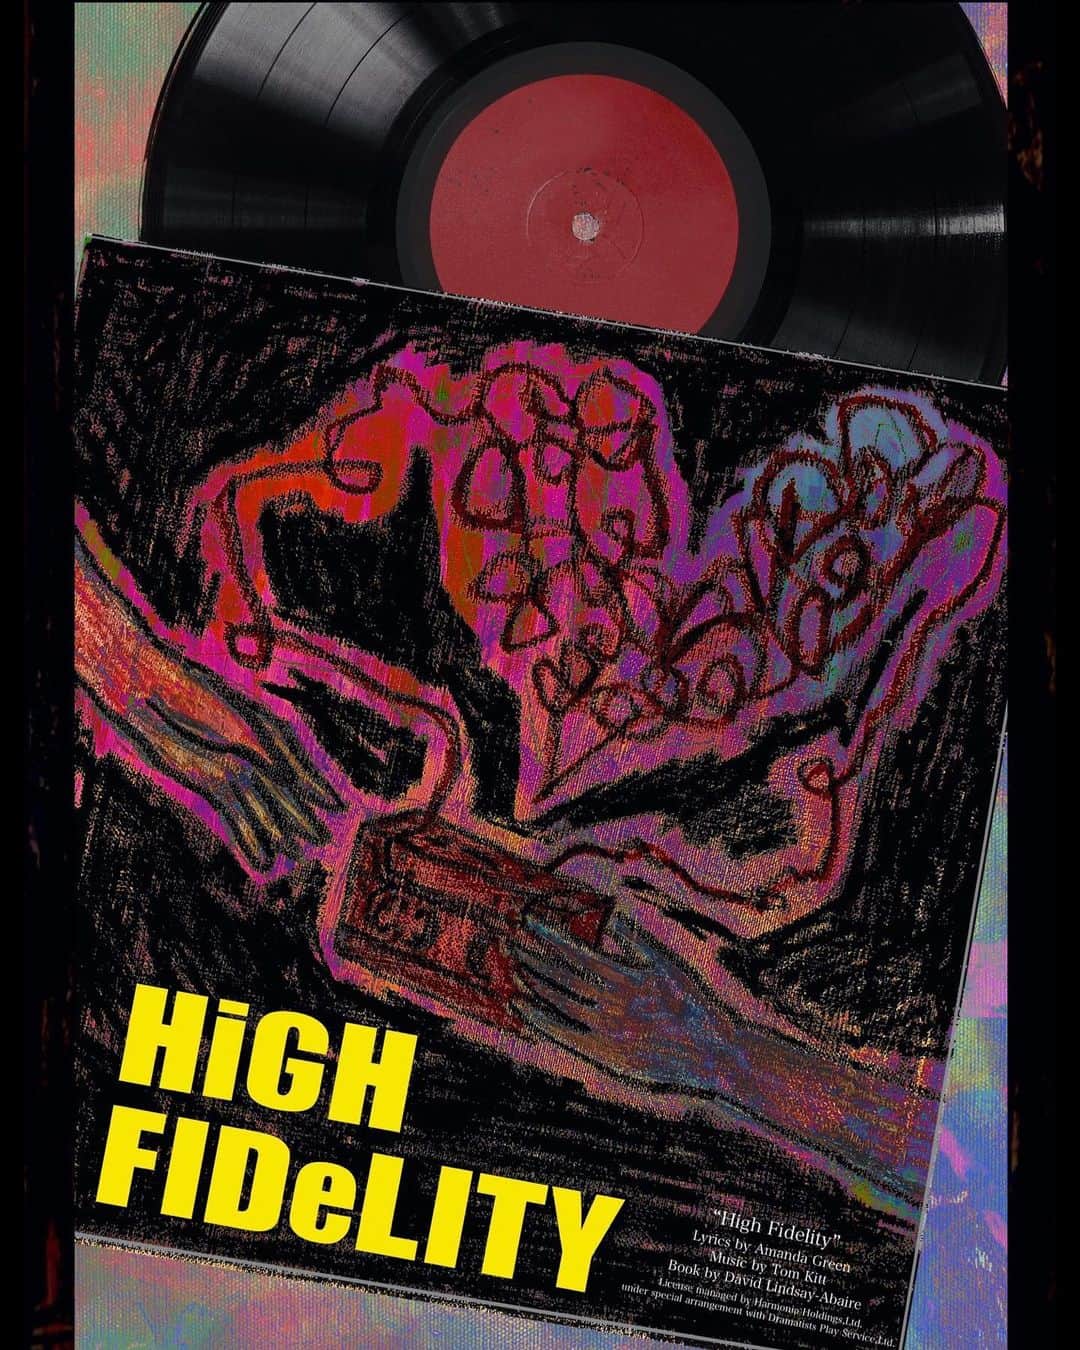 MARIA-Eのインスタグラム：「⁡ ［情報解禁］ ⁡ ミュージカル『High Fidelity』 出演させていただきます❤️ ⁡ 嬉しい再会も✨念願の共演も✨ そして何よりお客様にお会いできるのが 心から楽しみです🥰 ⁡ リズ、精一杯演じます！頑張ります！ よろしくお願いいたします🙇‍♀️ ⁡ ⁡ ーーーーー ⁡ ブロードウェイミュージカル High Fidelity 【期間】 2023年 10月23日〜10月31日 ⁡ 【場所】 新宿村Live ⁡ 【作曲】Tom Kitt ⁡ 【作詞】Amanda Green ⁡ 【脚本】David Lindsay-Abaire ⁡ 【上演台本・演出】上田一豪 ⁡ 【音楽監督】小澤時史 ⁡ 【キャスト】 ⁡ ロブ　上口耕平 ⁡ ディック　神田恭兵 ⁡ バリー　佐々木淳平 ⁡ ローラ　谷口あかり ⁡ リズ　MARIA-E ⁡ アンナ　新田恵海 ⁡ KYMAO /ブルース　鎌田誠樹 ⁡ マリー(Wキャスト)  三森千愛　尾川詩帆 ⁡ イアン(Wキャスト)  中井智彦　原慎一郎 ⁡ リーゼント男 三岳慎之助 中年男 ケンケン サスペンダー男 成海 亮 フトン男 斎藤英明 ⁡ アリソン 早希 ペニー 小多桜子 チャーリー 西郷真悠子 サラ 隈元梨乃 ジャッキー 中村萌子 ⁡ ■作品概要/あらすじ ⁡ レコード店を経営する冴えない男、ロブ。 クラブのDJをやっていてちょっとだけ人気者だった頃を 懐かしむばかりで店の経営にも身が入らない。 店には本人同様、生粋のレコードマニアしか集まらず 閑古鳥が鳴く毎日。 そんなロブに愛想を尽かした彼女のローラは 一方的に別れを告げる。 恋愛も人生も上手くいかない理由を探して 過去の恋愛遍歴をたどるロブ。 人生における最も悲惨な失恋ベスト5を選び出して 自分の忘れられない恋愛を見つめ直していく。 そしてローラも忘れようとするが・・・ 『Next to Normal』でトニー賞を受賞したトム・キットが 音楽を手がけたロックコメディミュージカル！ ⁡ ■日程 ⁡ 2023年10月26日(木)〜10月31日(火) ⁡ 10/26(木)14:00開演〔三森・中井〕 ⁡ 10/27(金)19:00開演〔尾川・原〕 ⁡ 10/28(土)13:00開演〔三森・原〕 ⁡ 10/28(土)18:00開演〔尾川・中井〕 ⁡ 10/29(日)13:00開演〔尾川・中井〕 ⁡ 10/29(日)18:00開演〔三森・原〕 ⁡ 10/30(月)19:00開演〔三森・中井〕 ⁡ 10/31(火)14:00開演〔尾川・原〕 ⁡ ※開場は開演の30分前 ⁡ ■会場 ⁡ 新宿村LIVE　　 東京都新宿区北新宿2-1-2 新宿村CENTRAL 地下2F ⁡ ⁡ ■チケット ⁡ チケット 9,500円 ※全席指定 ⁡ 【スタッフ】 ⁡ 上演台本・演出 上田一豪  音楽監督 小澤時史 ／ 美術・衣裳 柴田麻衣子 照明 関口大和(ASG) ／ 音響 高橋秀雄(Entr’acte Inc.)  舞台監督 安達徳仁(大雄) 演出部 キャサリン・バンパッテン  美術製作 三井優子 ／ 制作 三浦未来 ⁡ プロデューサー 柴田麻衣子 ⁡ 企画・製作 TipTap  主催 株式会社Cue Company」